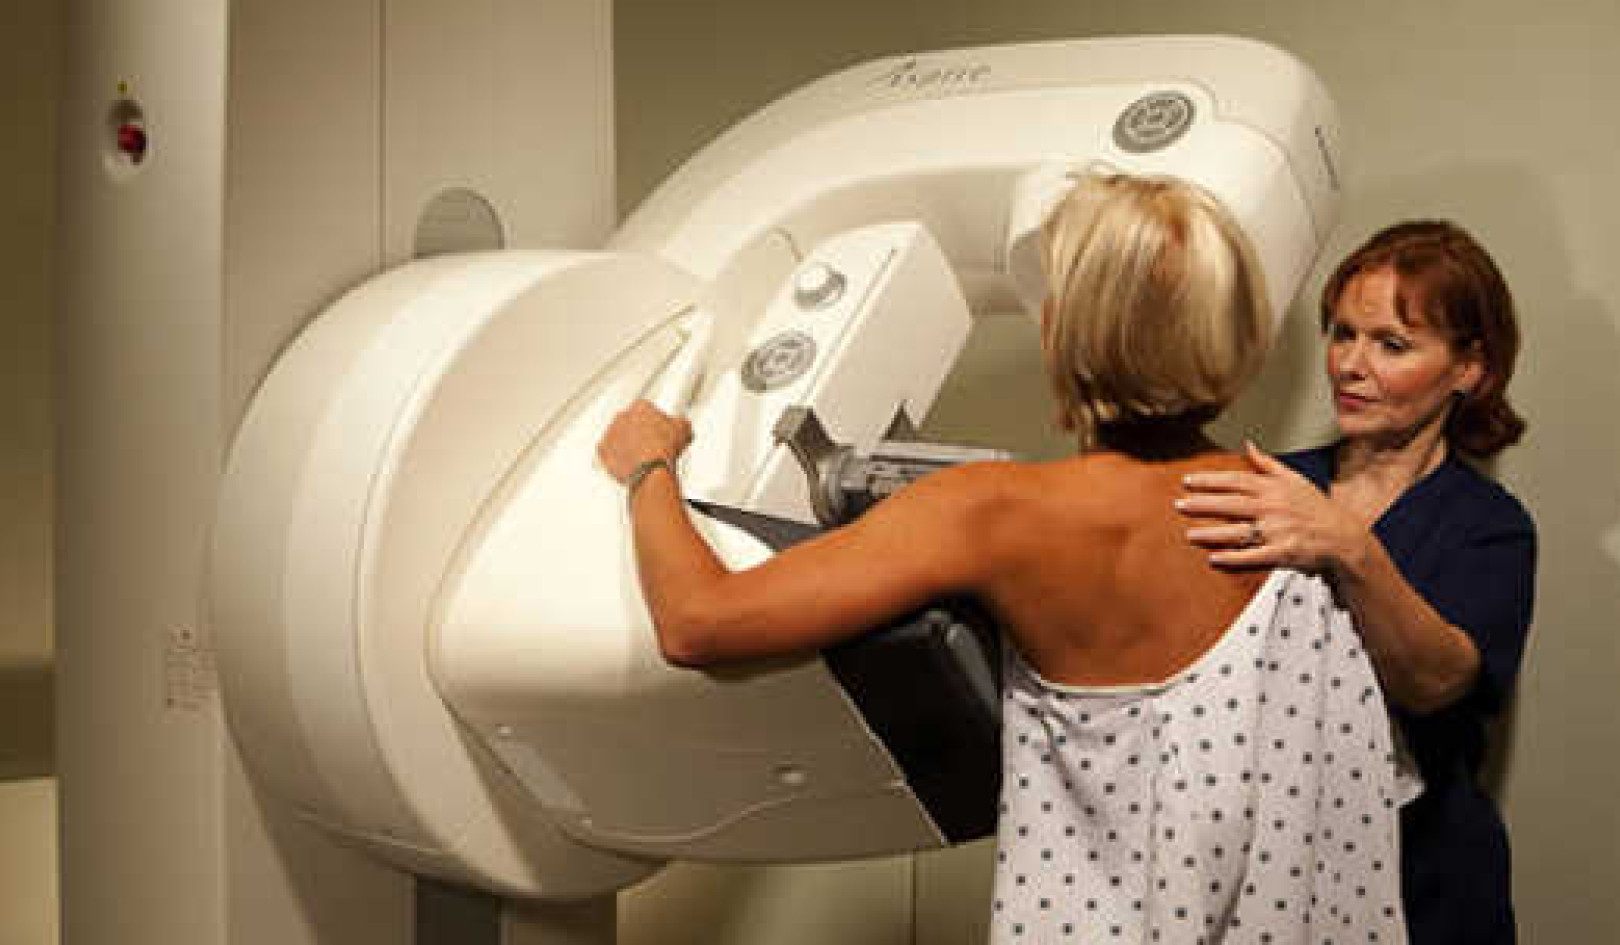 Mammogramy przediagnozowują raka piersi 1 na 7 w USA